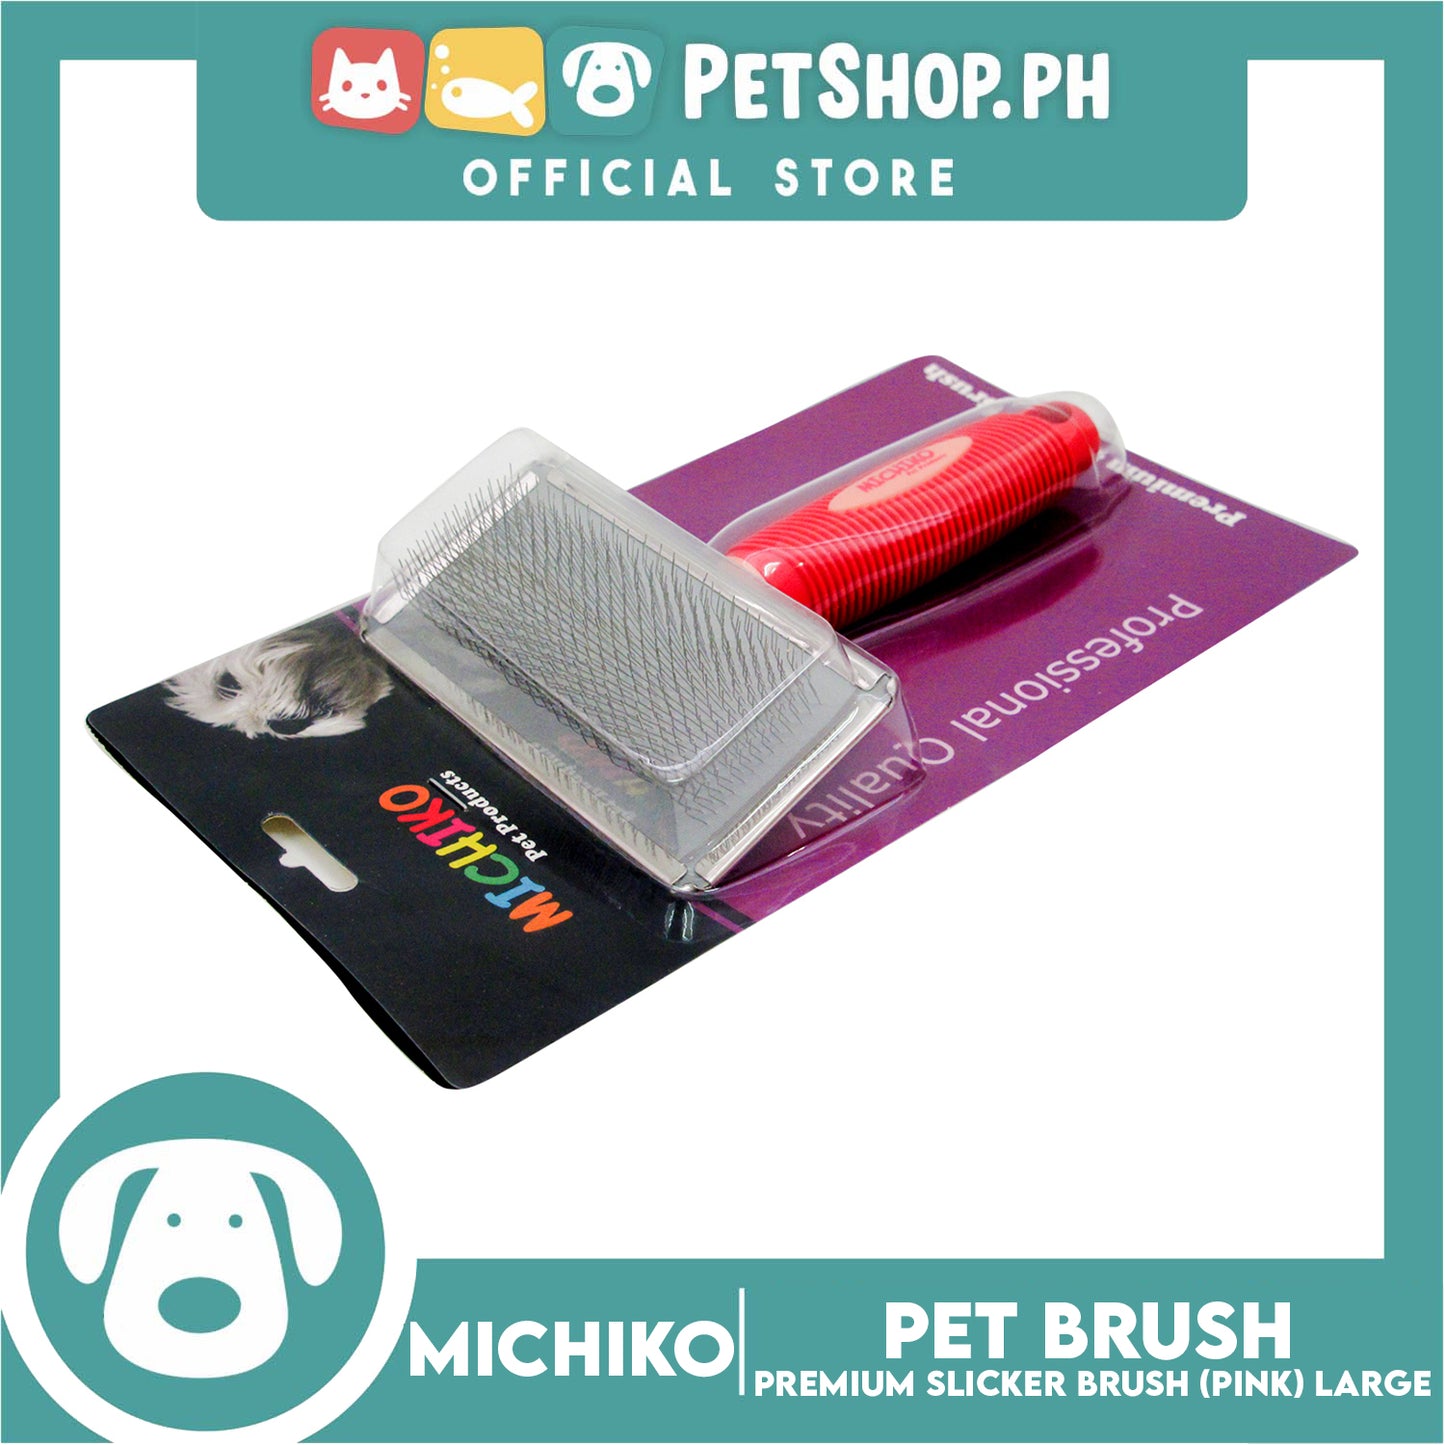 Michiko Premium Slicker Brush Pink Color (Large) Pet Brush, Pet Grooming